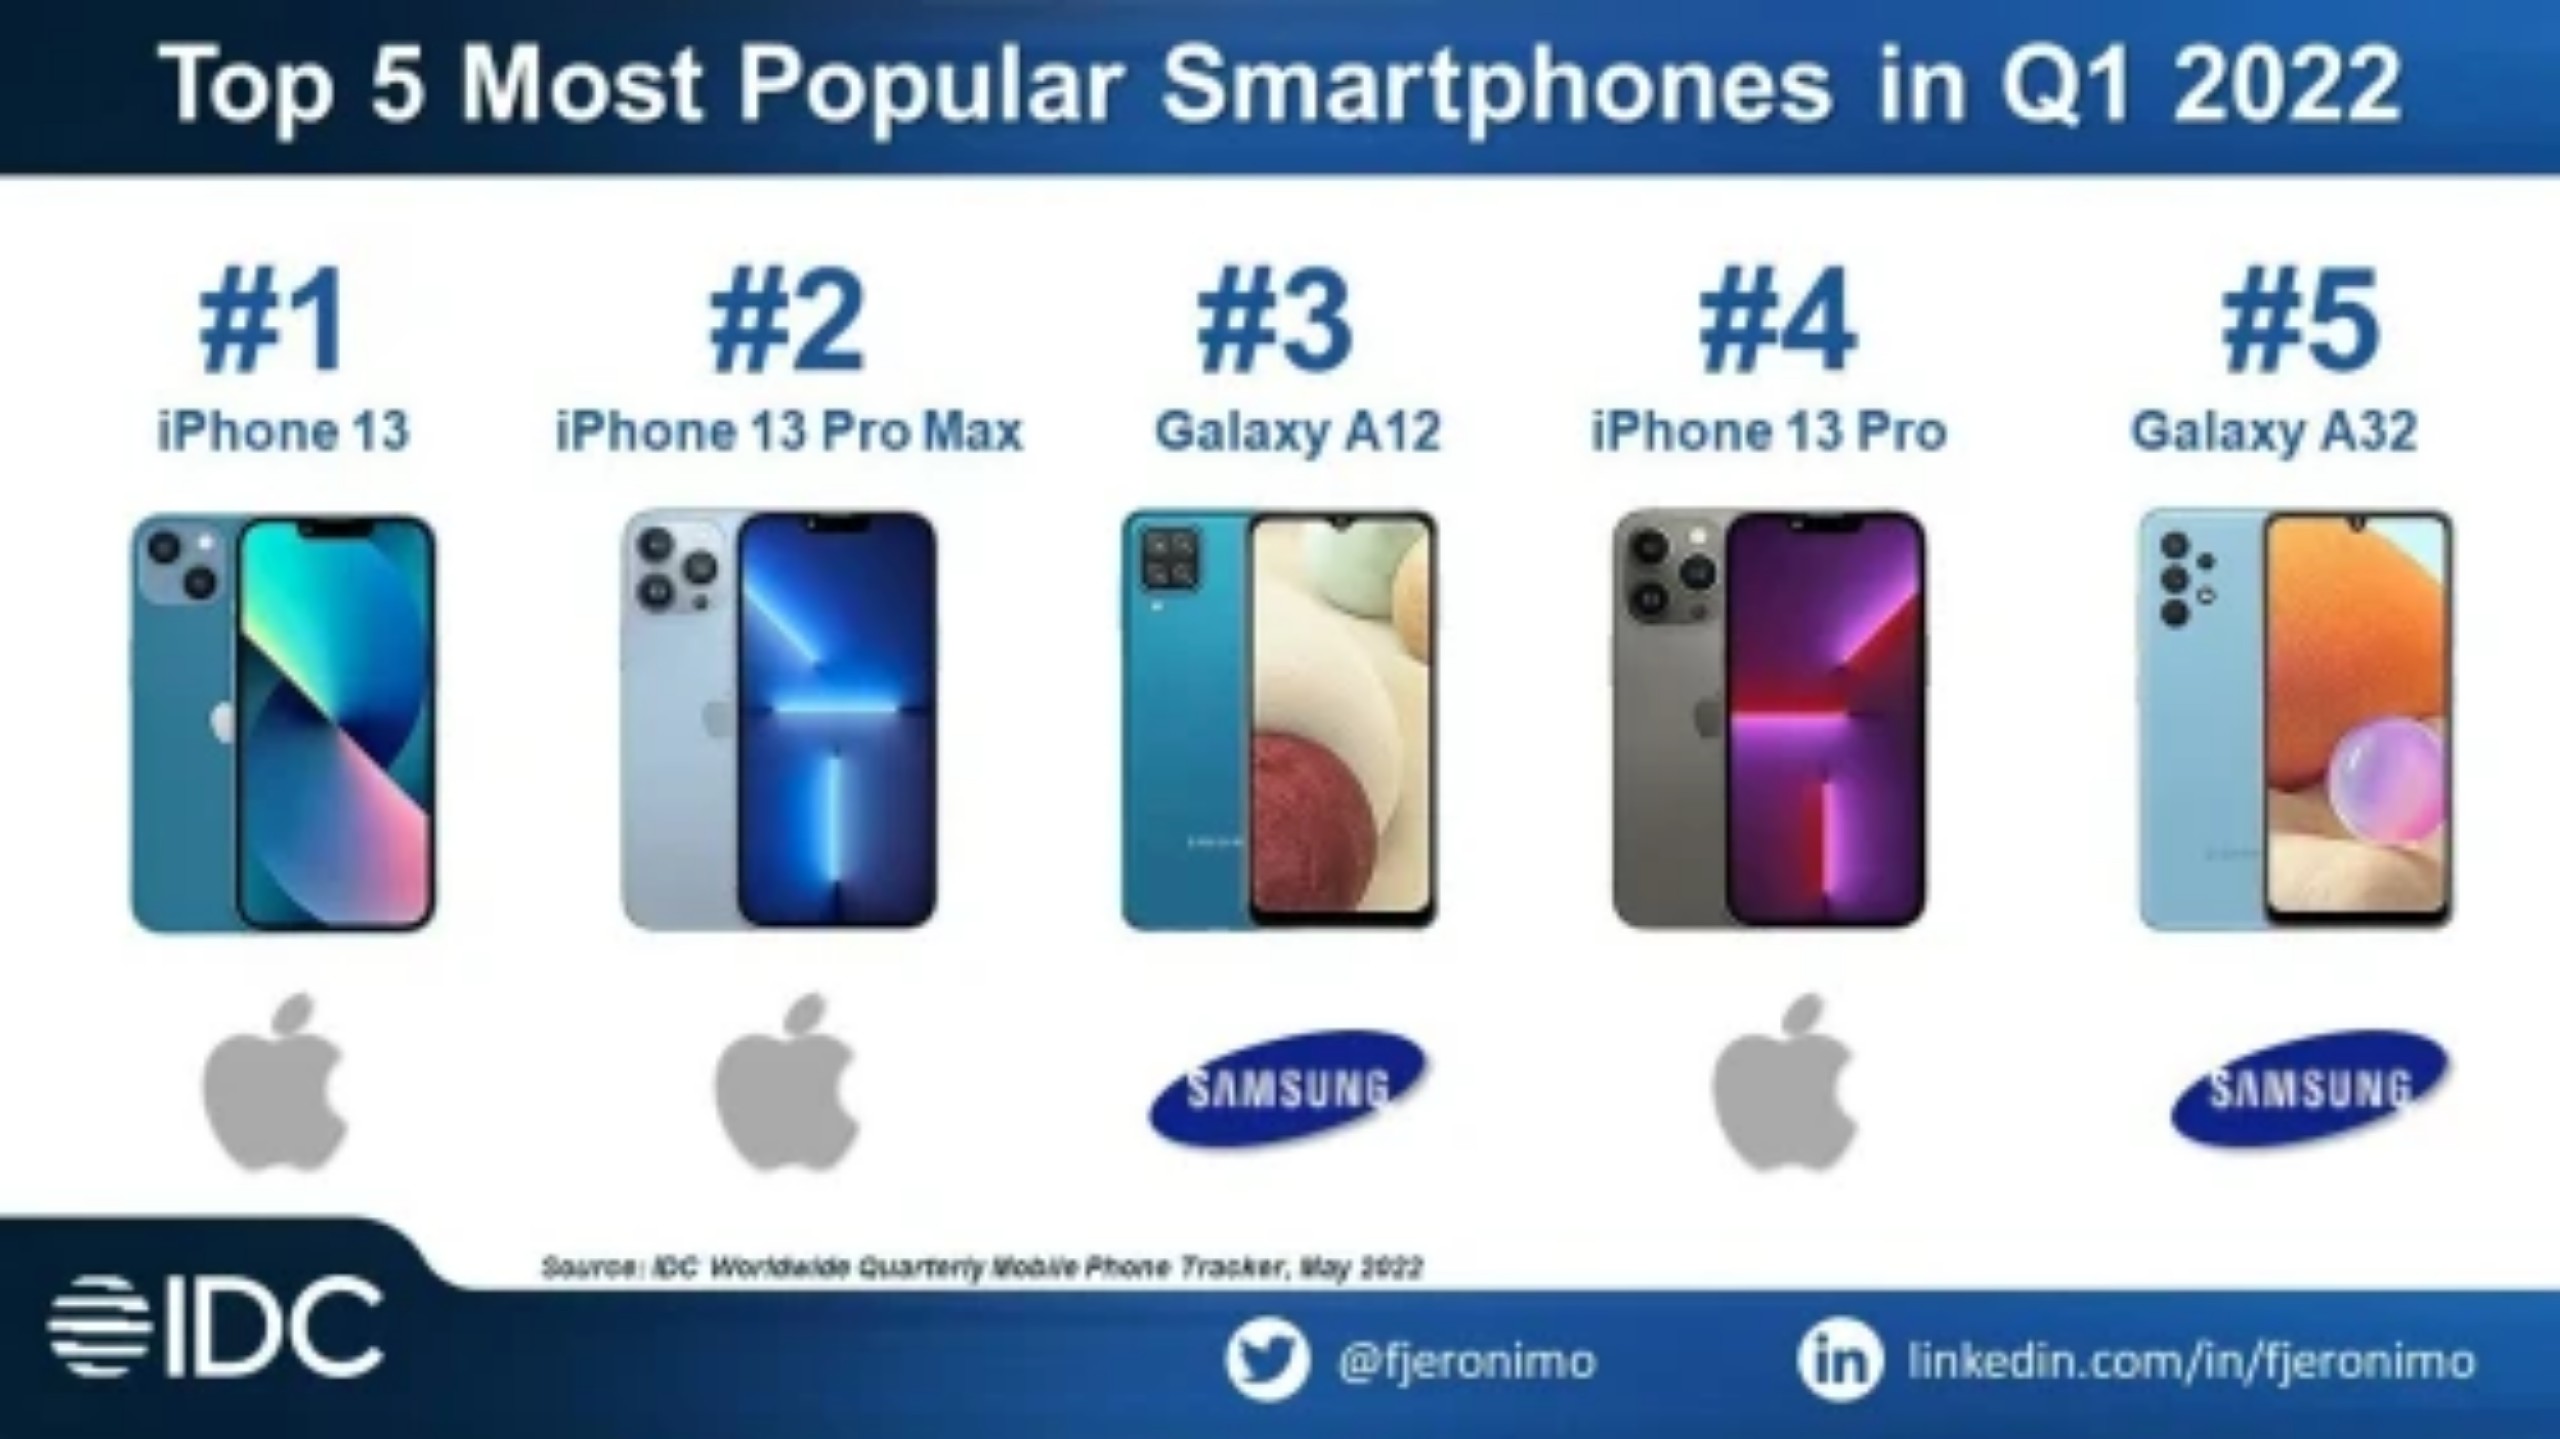 Apple thể hiện đẳng cấp với ba trên năm smartphone bán chạy nhất thế giới trong quý 1/2022.